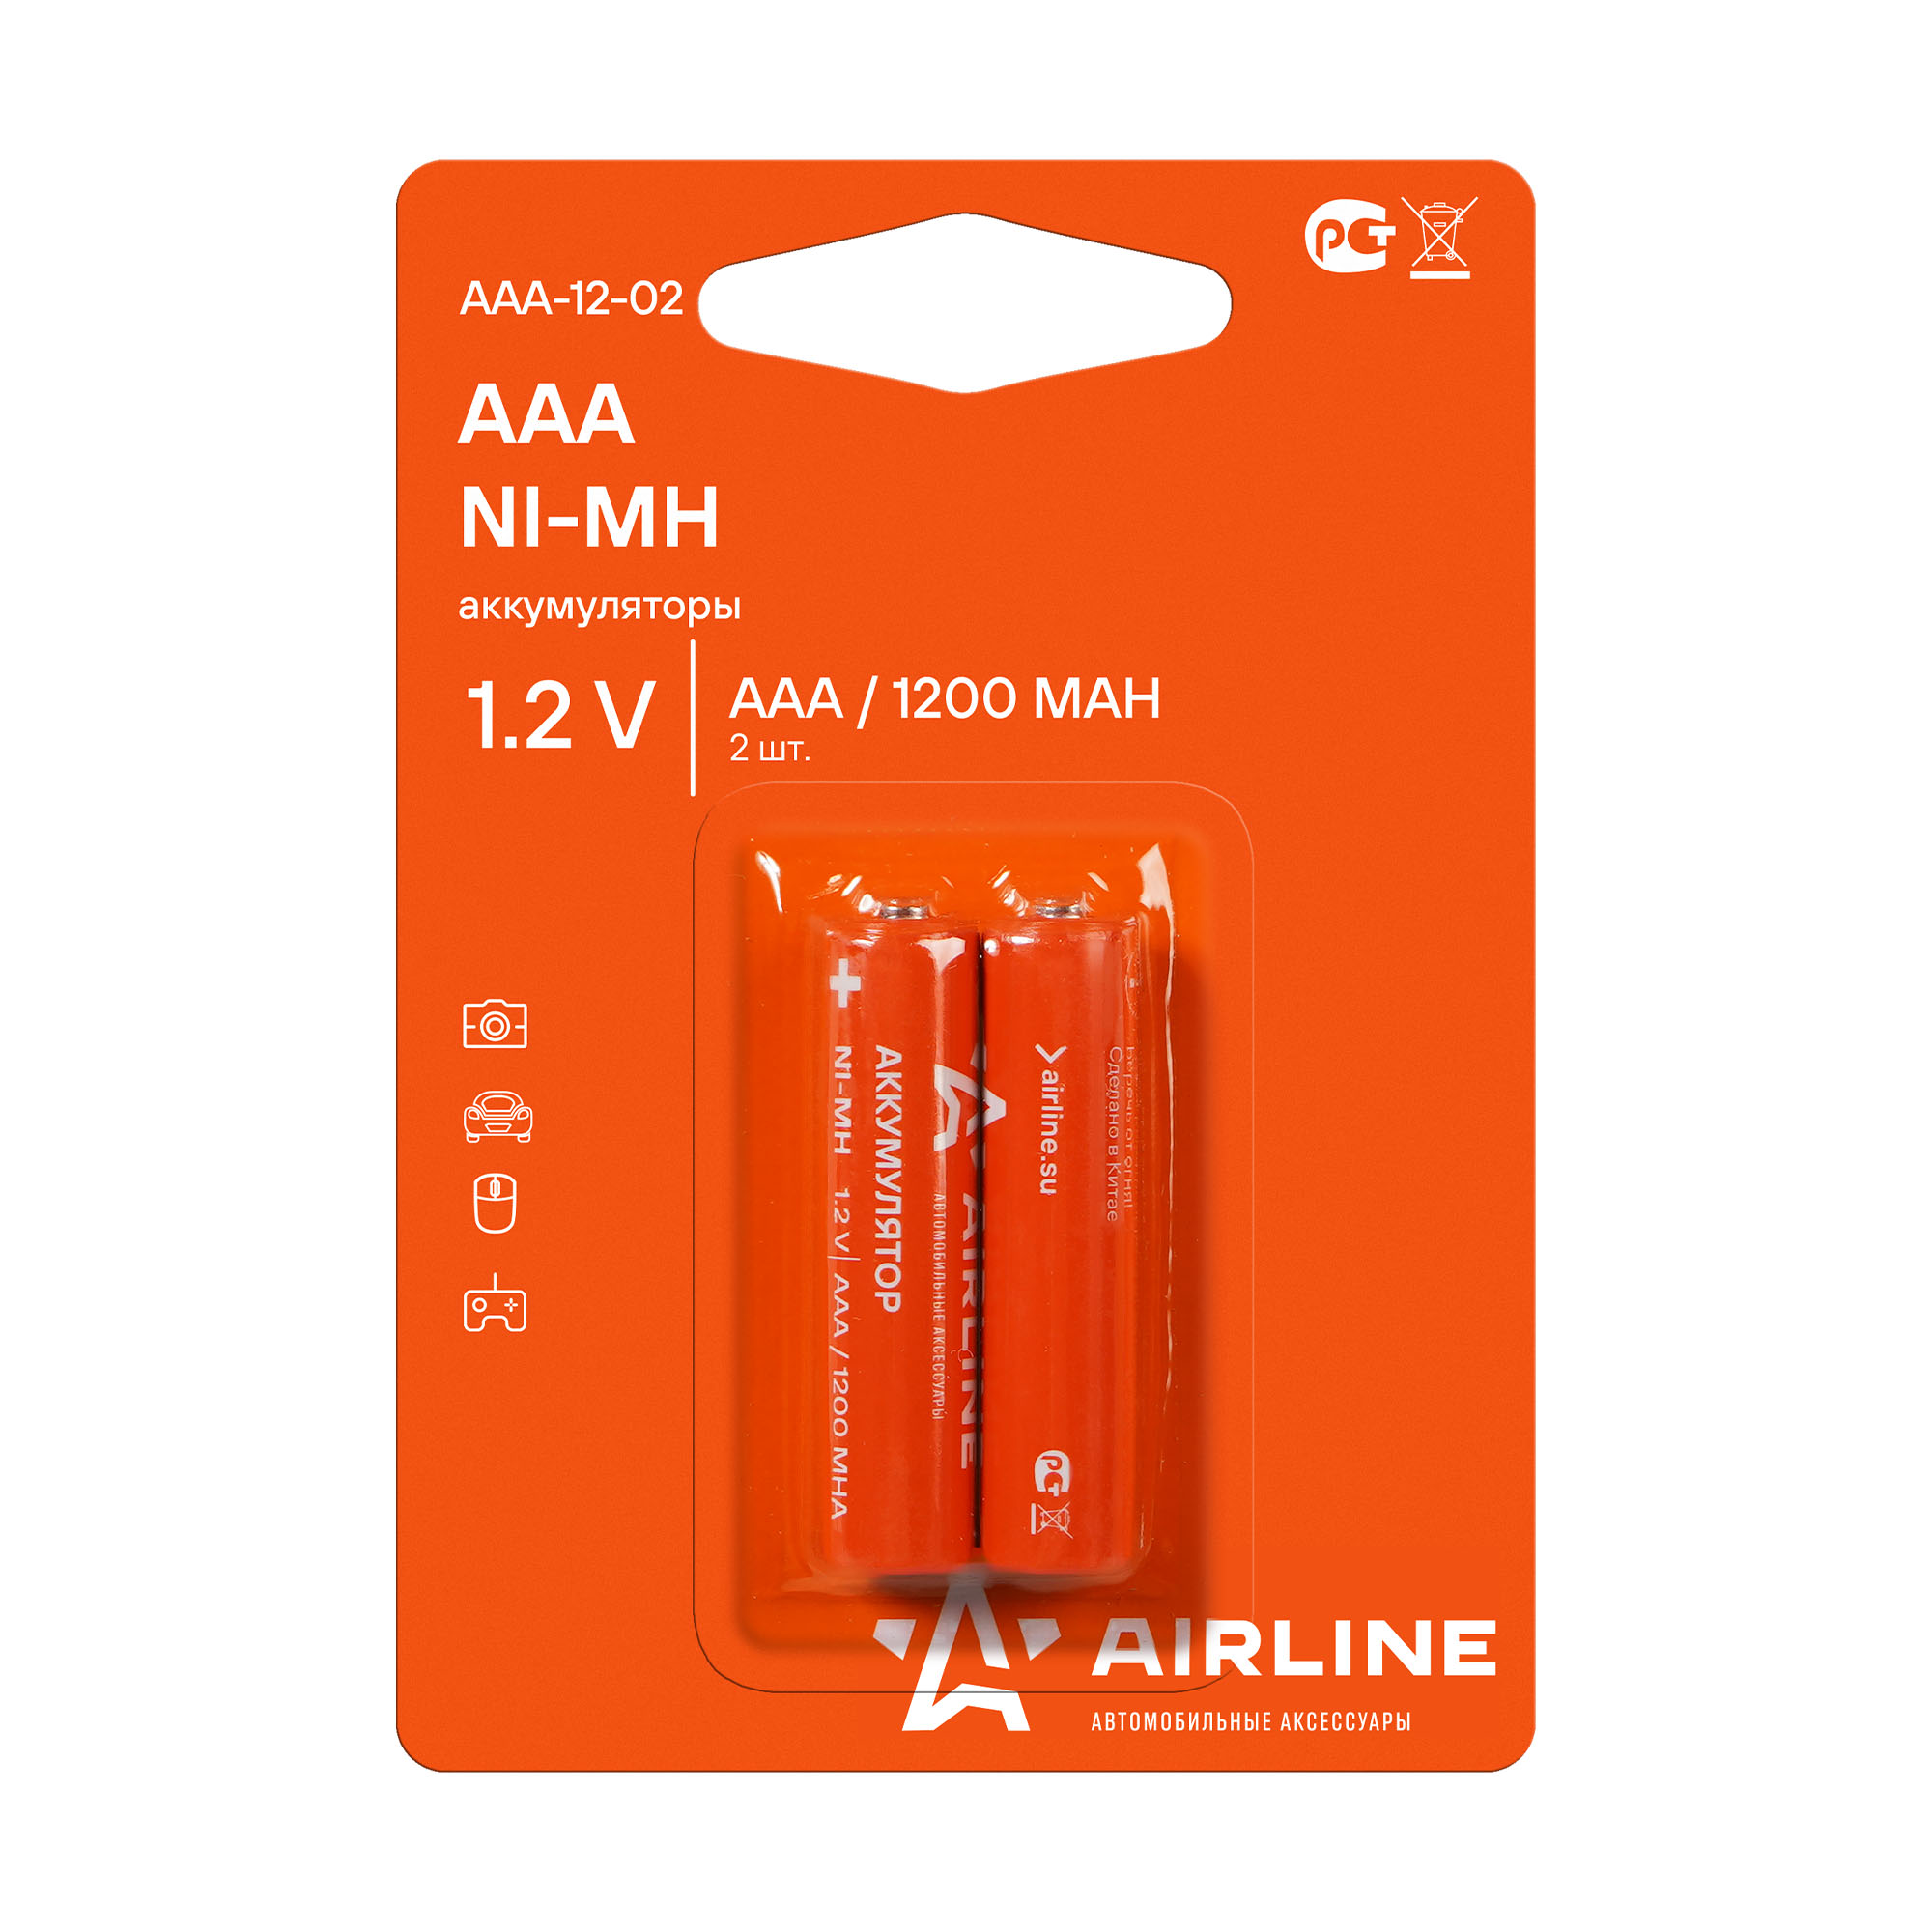 Батарейки AAA HR03 аккумулятор Ni-Mh 1200 mAh 2шт. - AIRLINE AAA-12-02